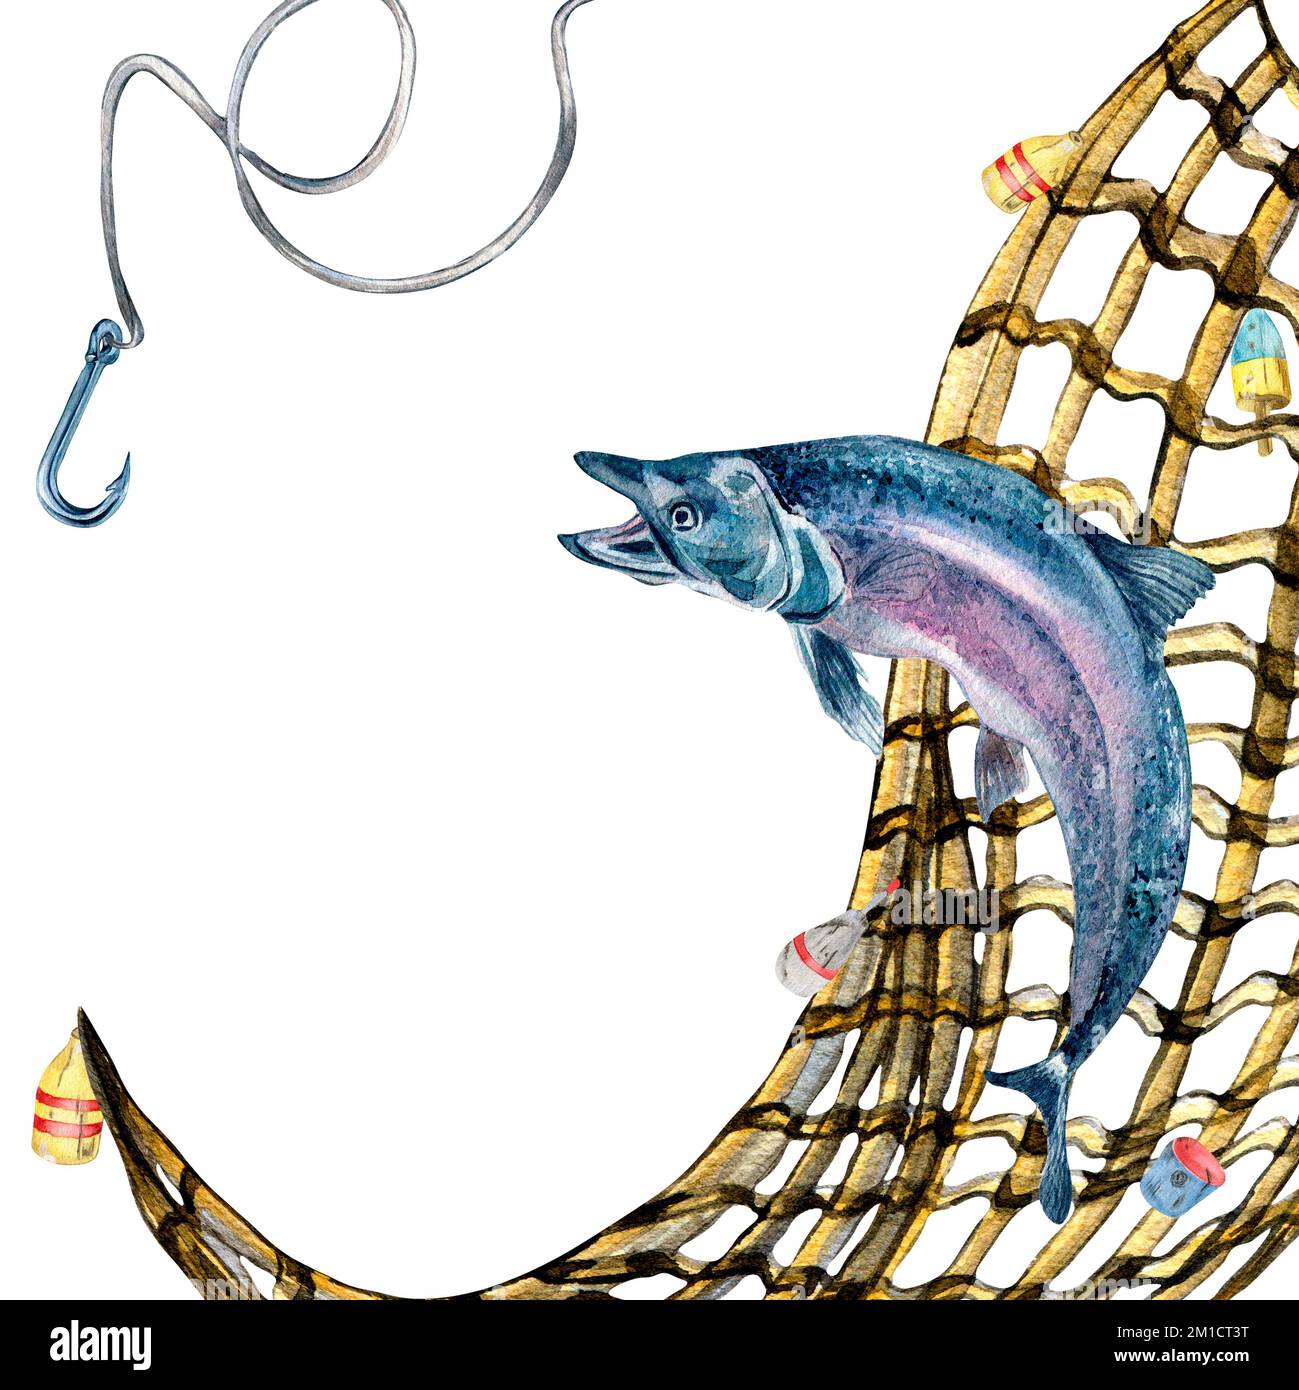 Peces en una red de pesca vectorial ilustración de dibujo a mano